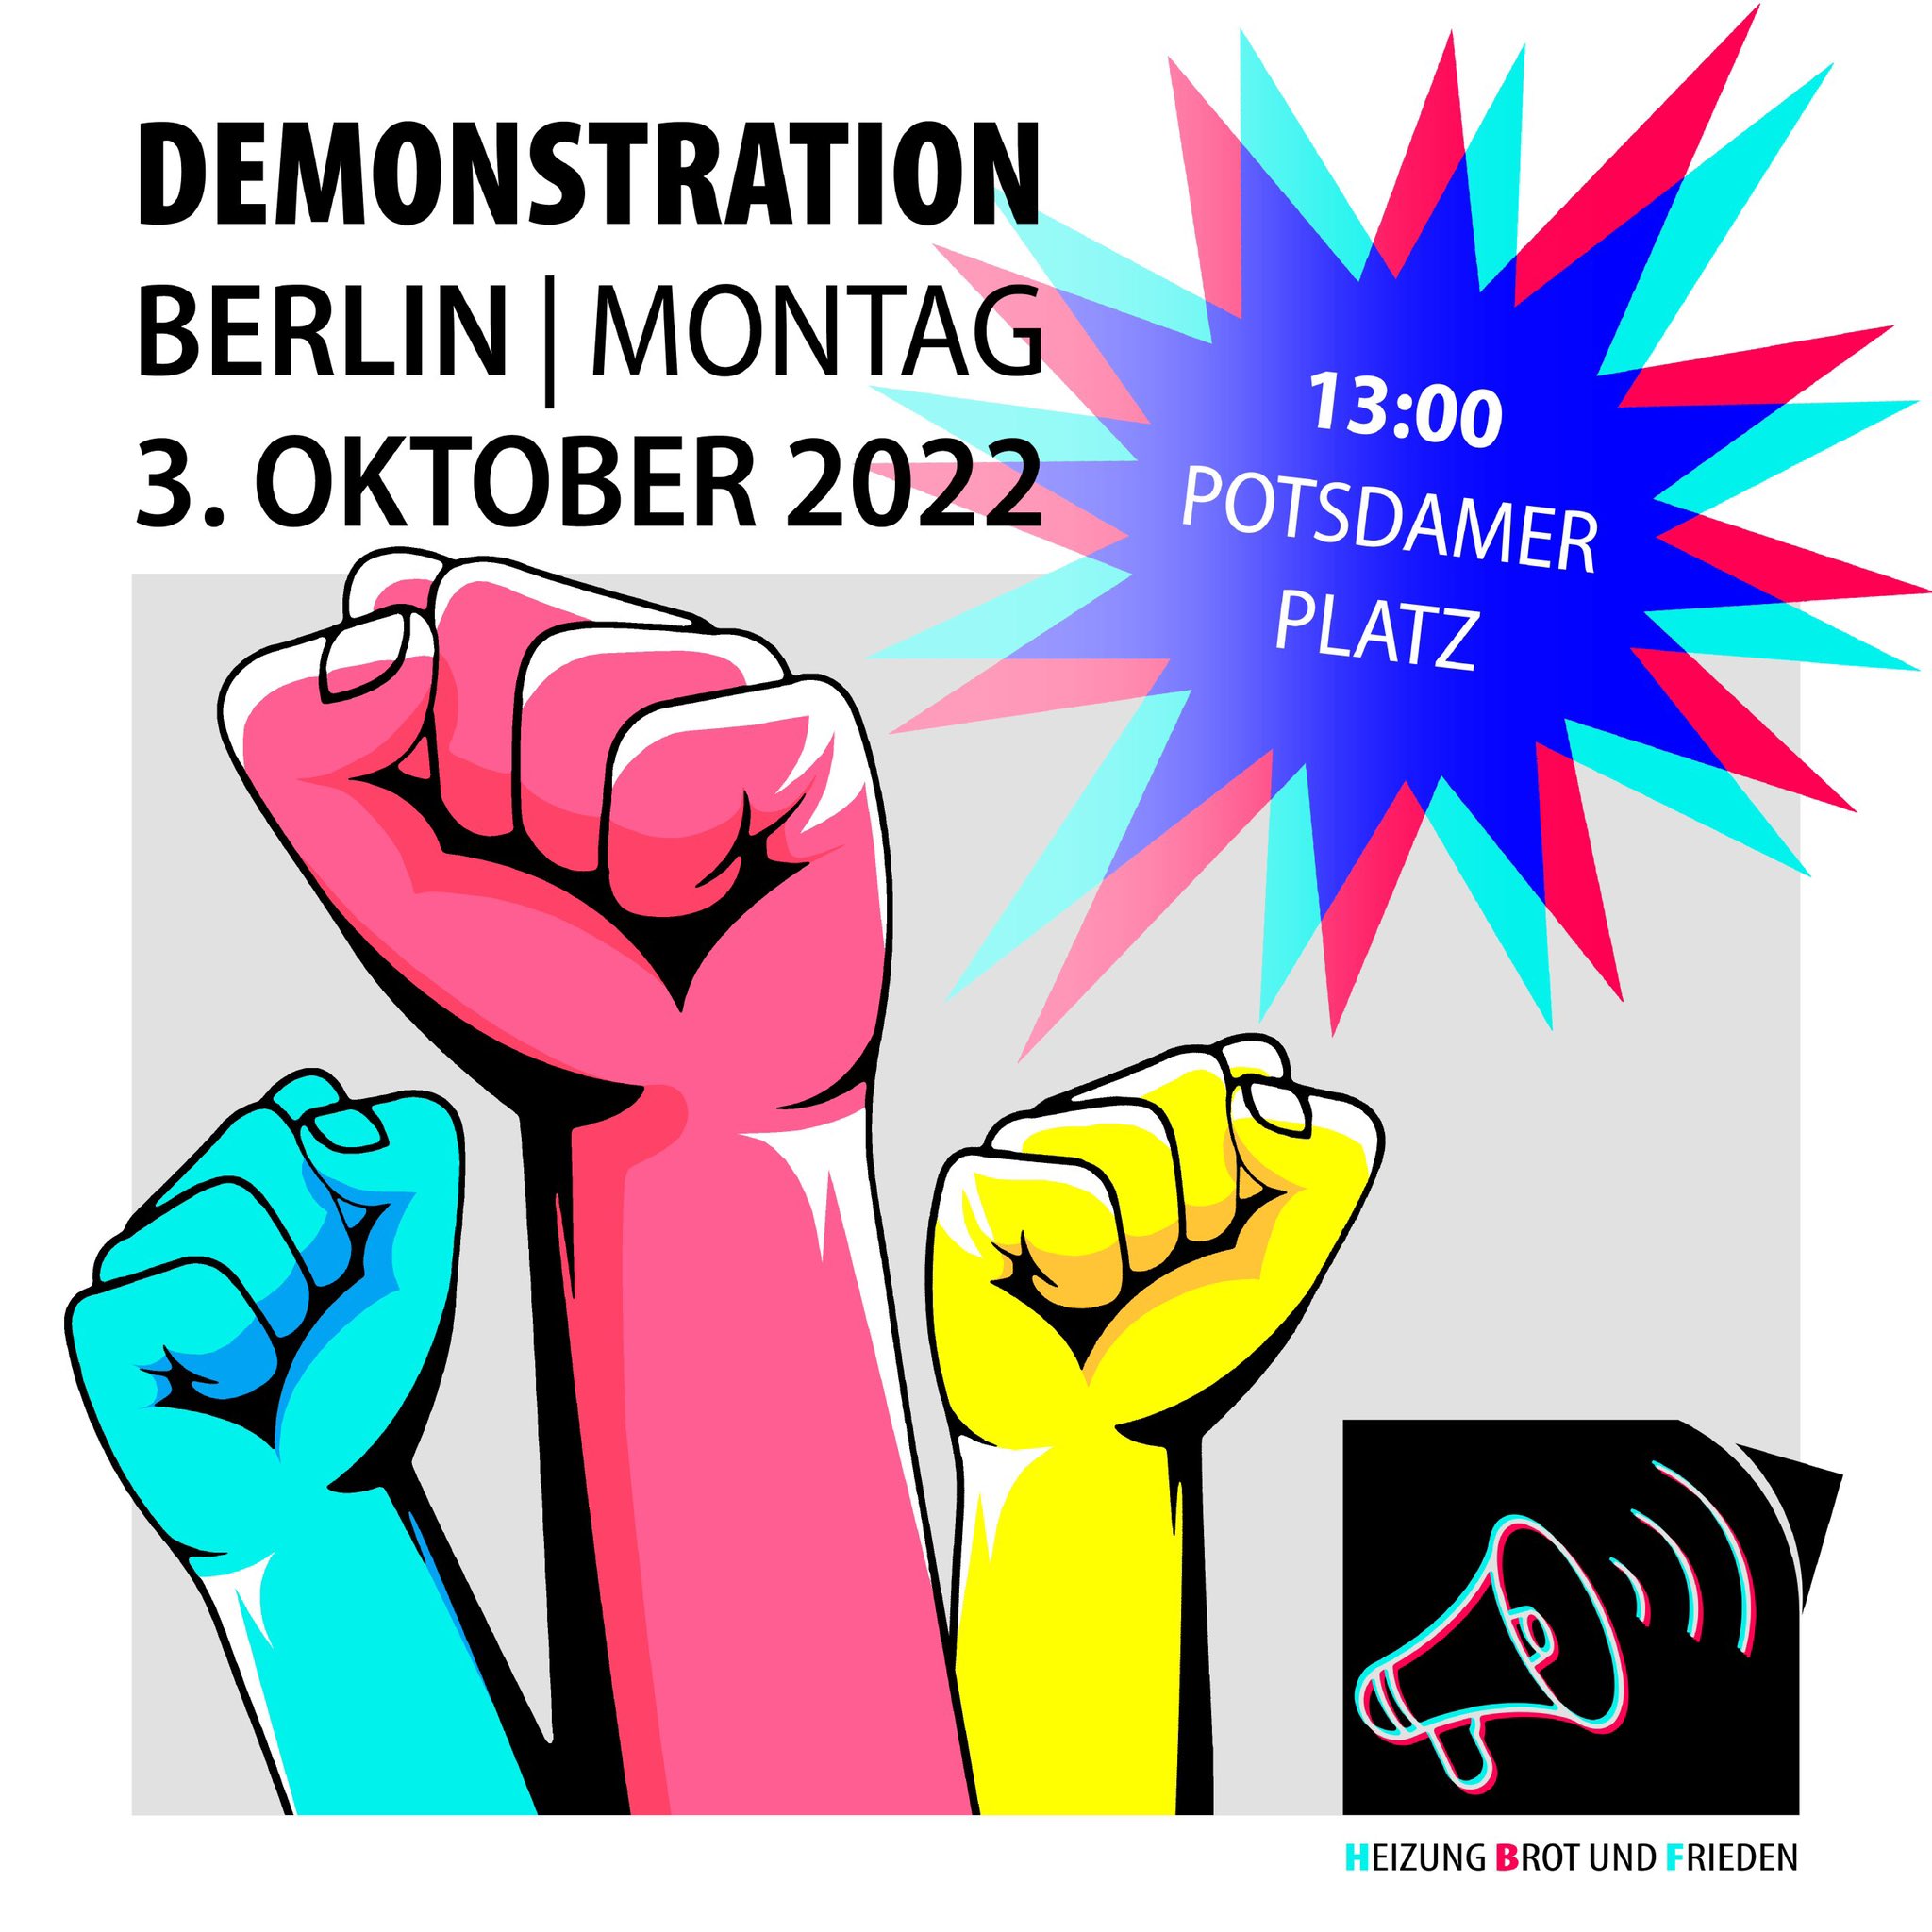 Heizung, Brot & Frieden! Protestieren statt Frieren! Demonstration am 03. Oktober in Berlin